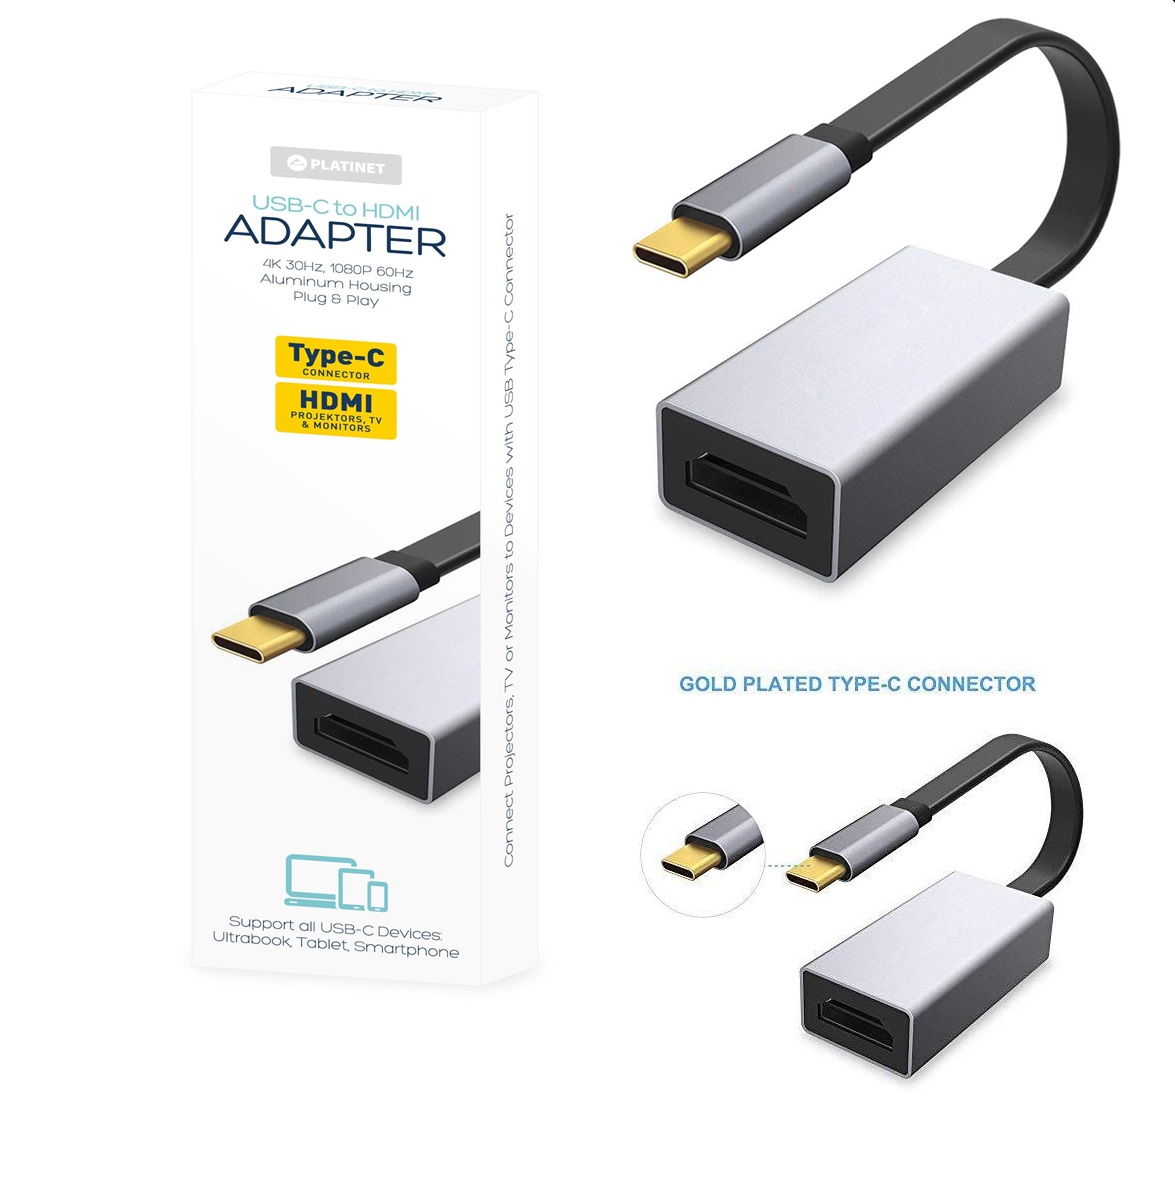 USB-C to HDMI Adapter PLATINET PMMA9087 0.15 m